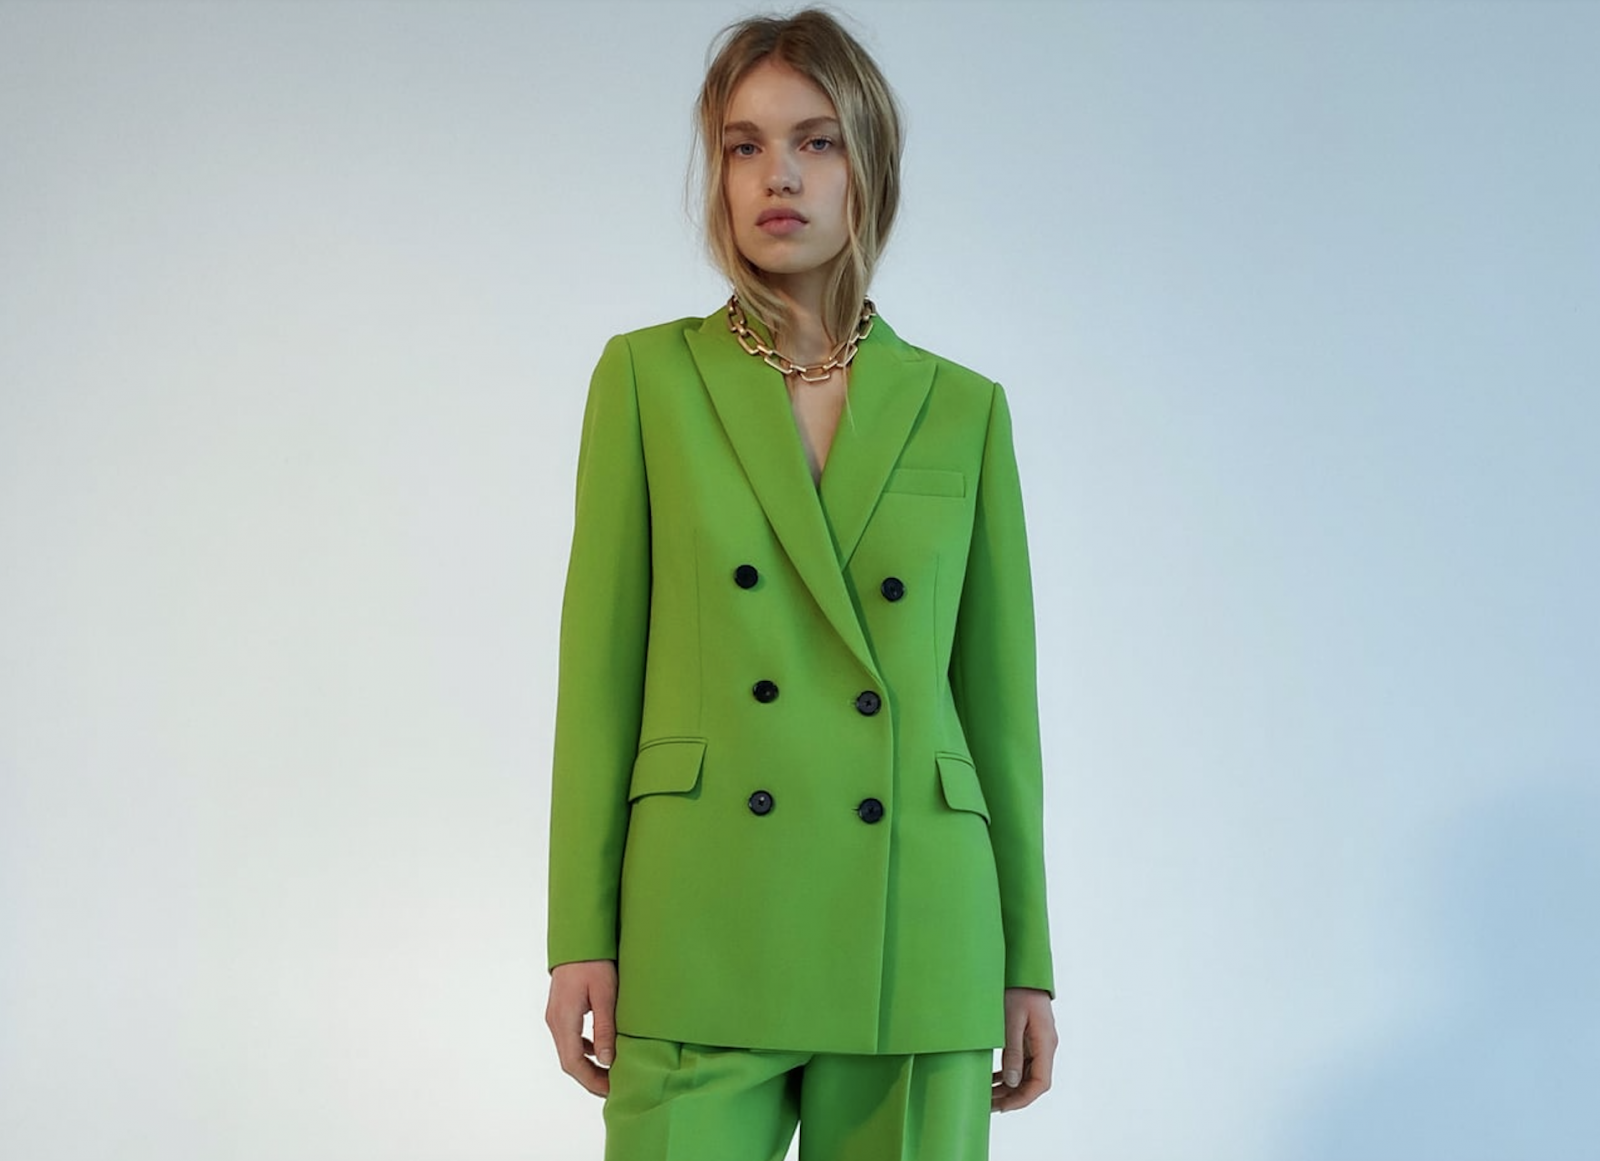 Model wearing green suit from Zara